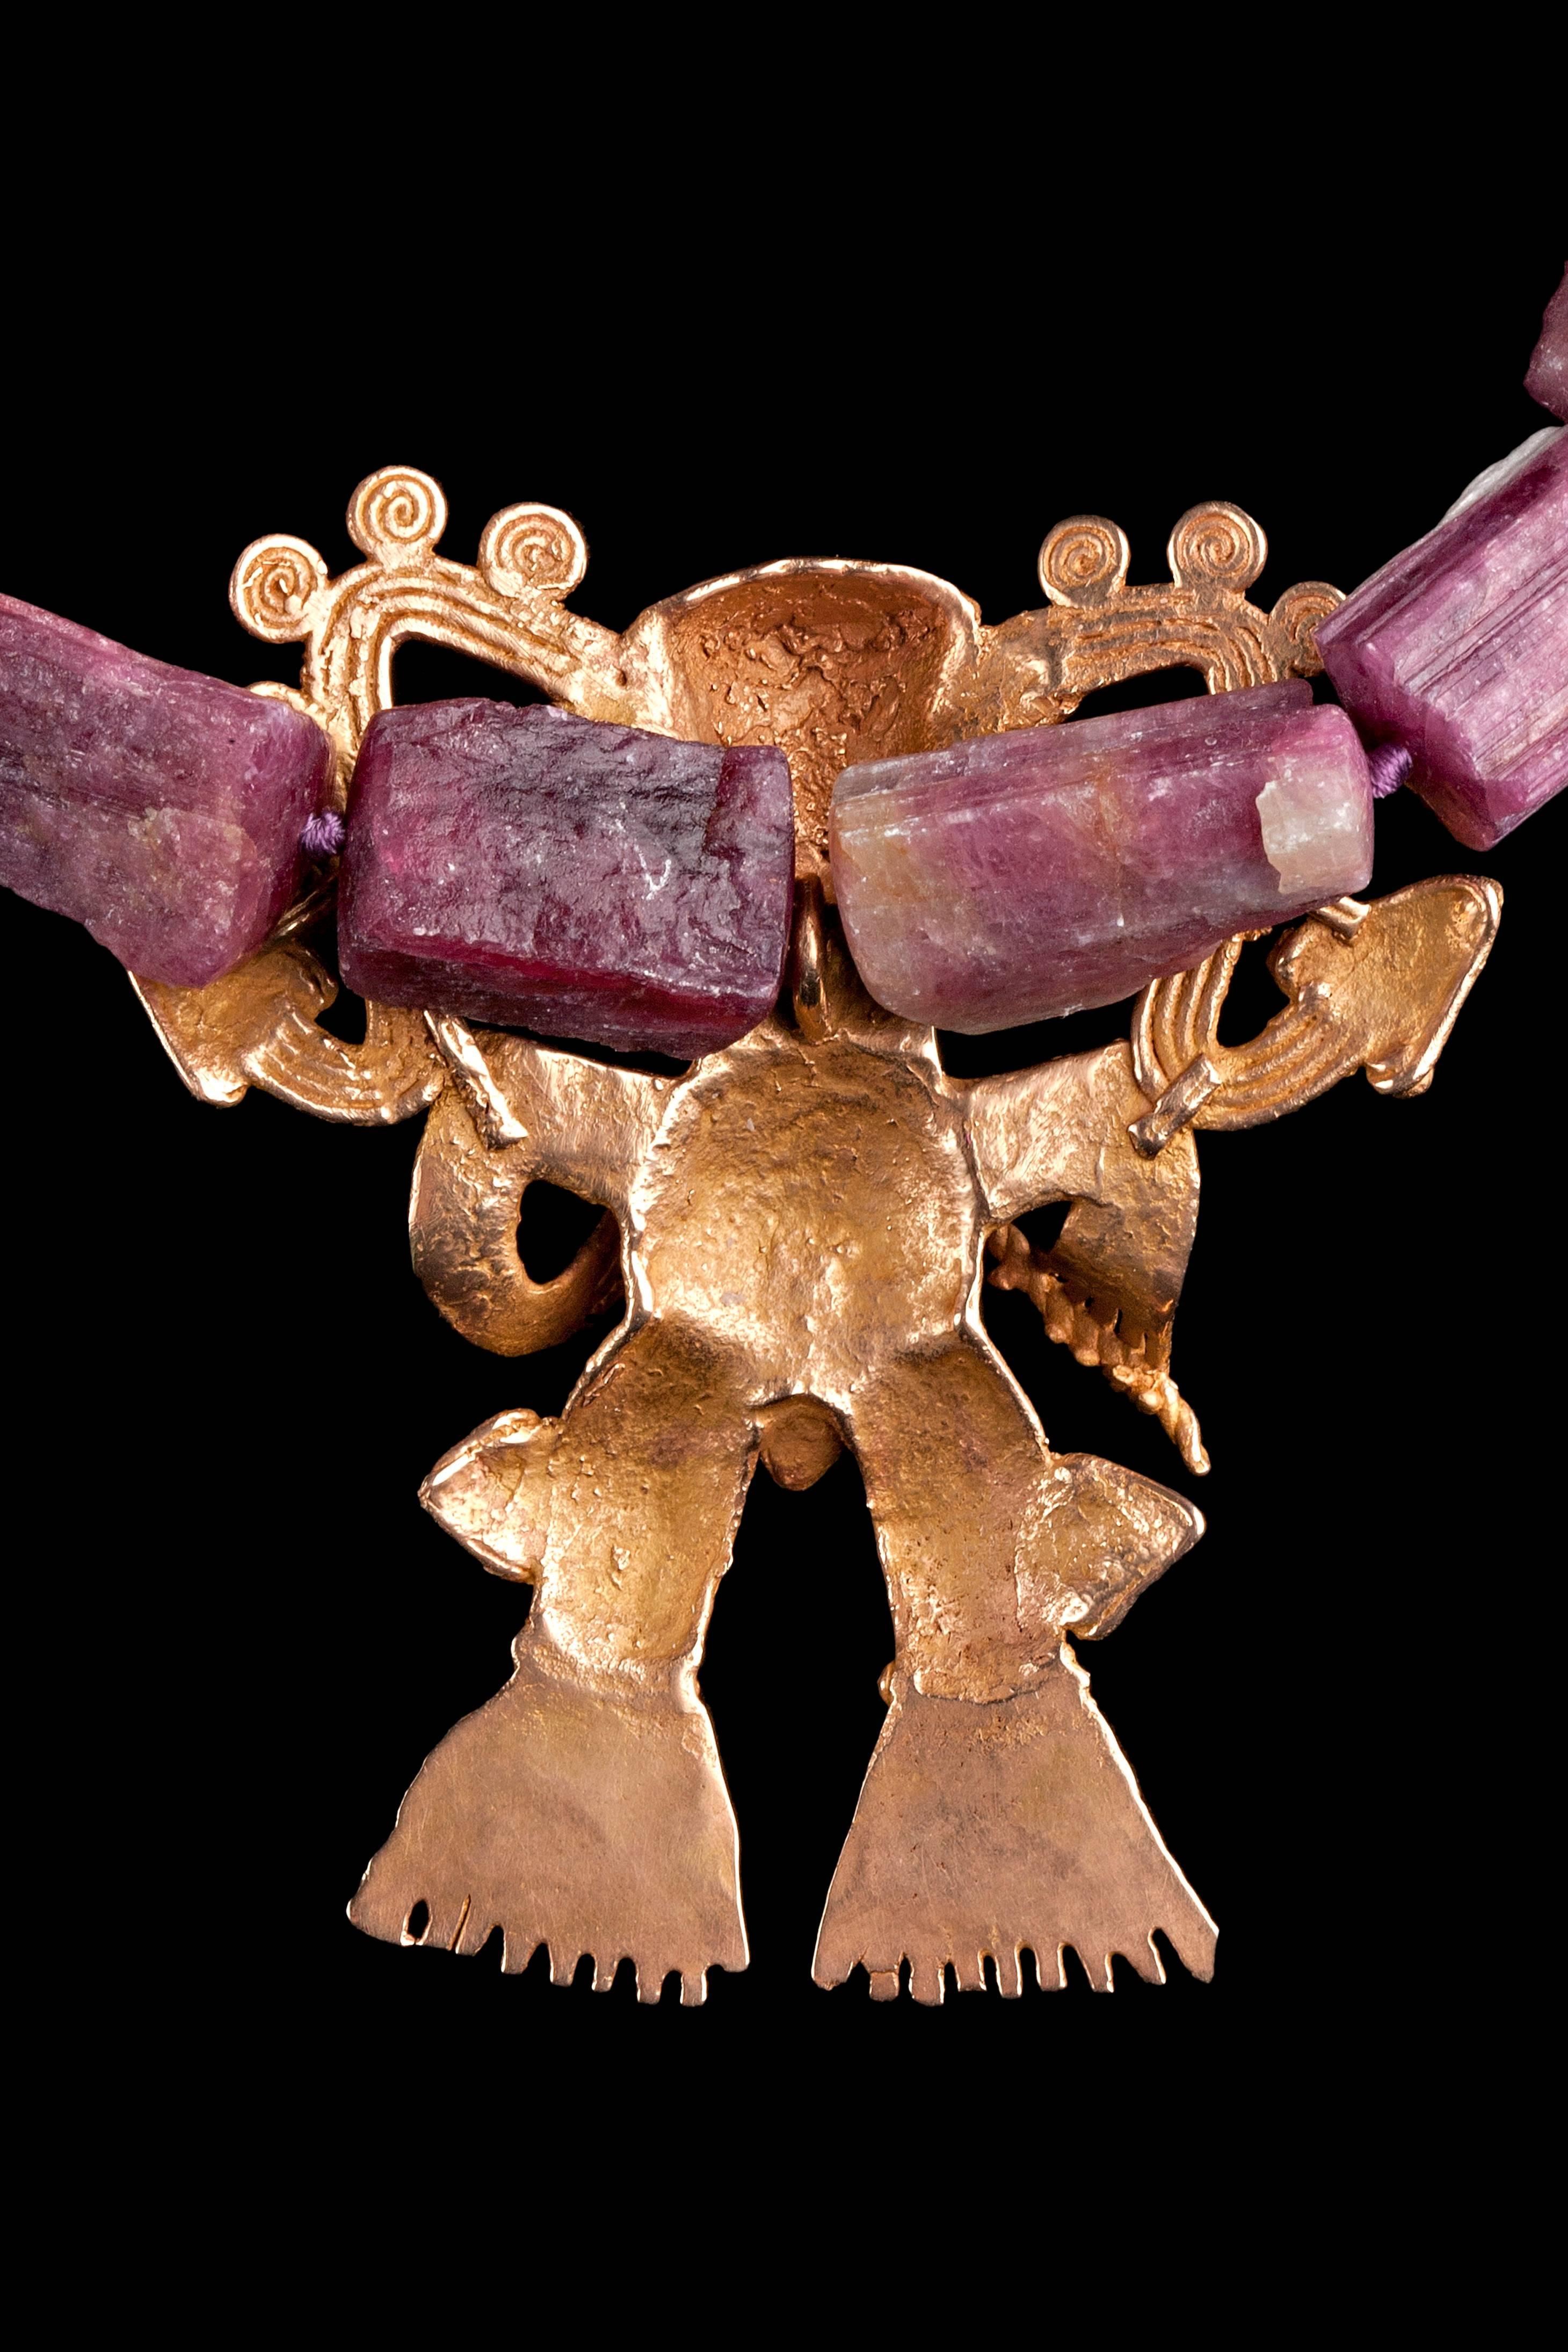 Collier de tourmaline rose naturelle (167 gms) avec tambour surnaturel en or rare Veraguas/Diquis Ca. 700 à 1400 AD. Très bel exemple d'orfèvrerie ancienne, précolombienne, d'Amérique centrale, du Costa Rica ou du Panama. 111 grammes d'or rose pâle